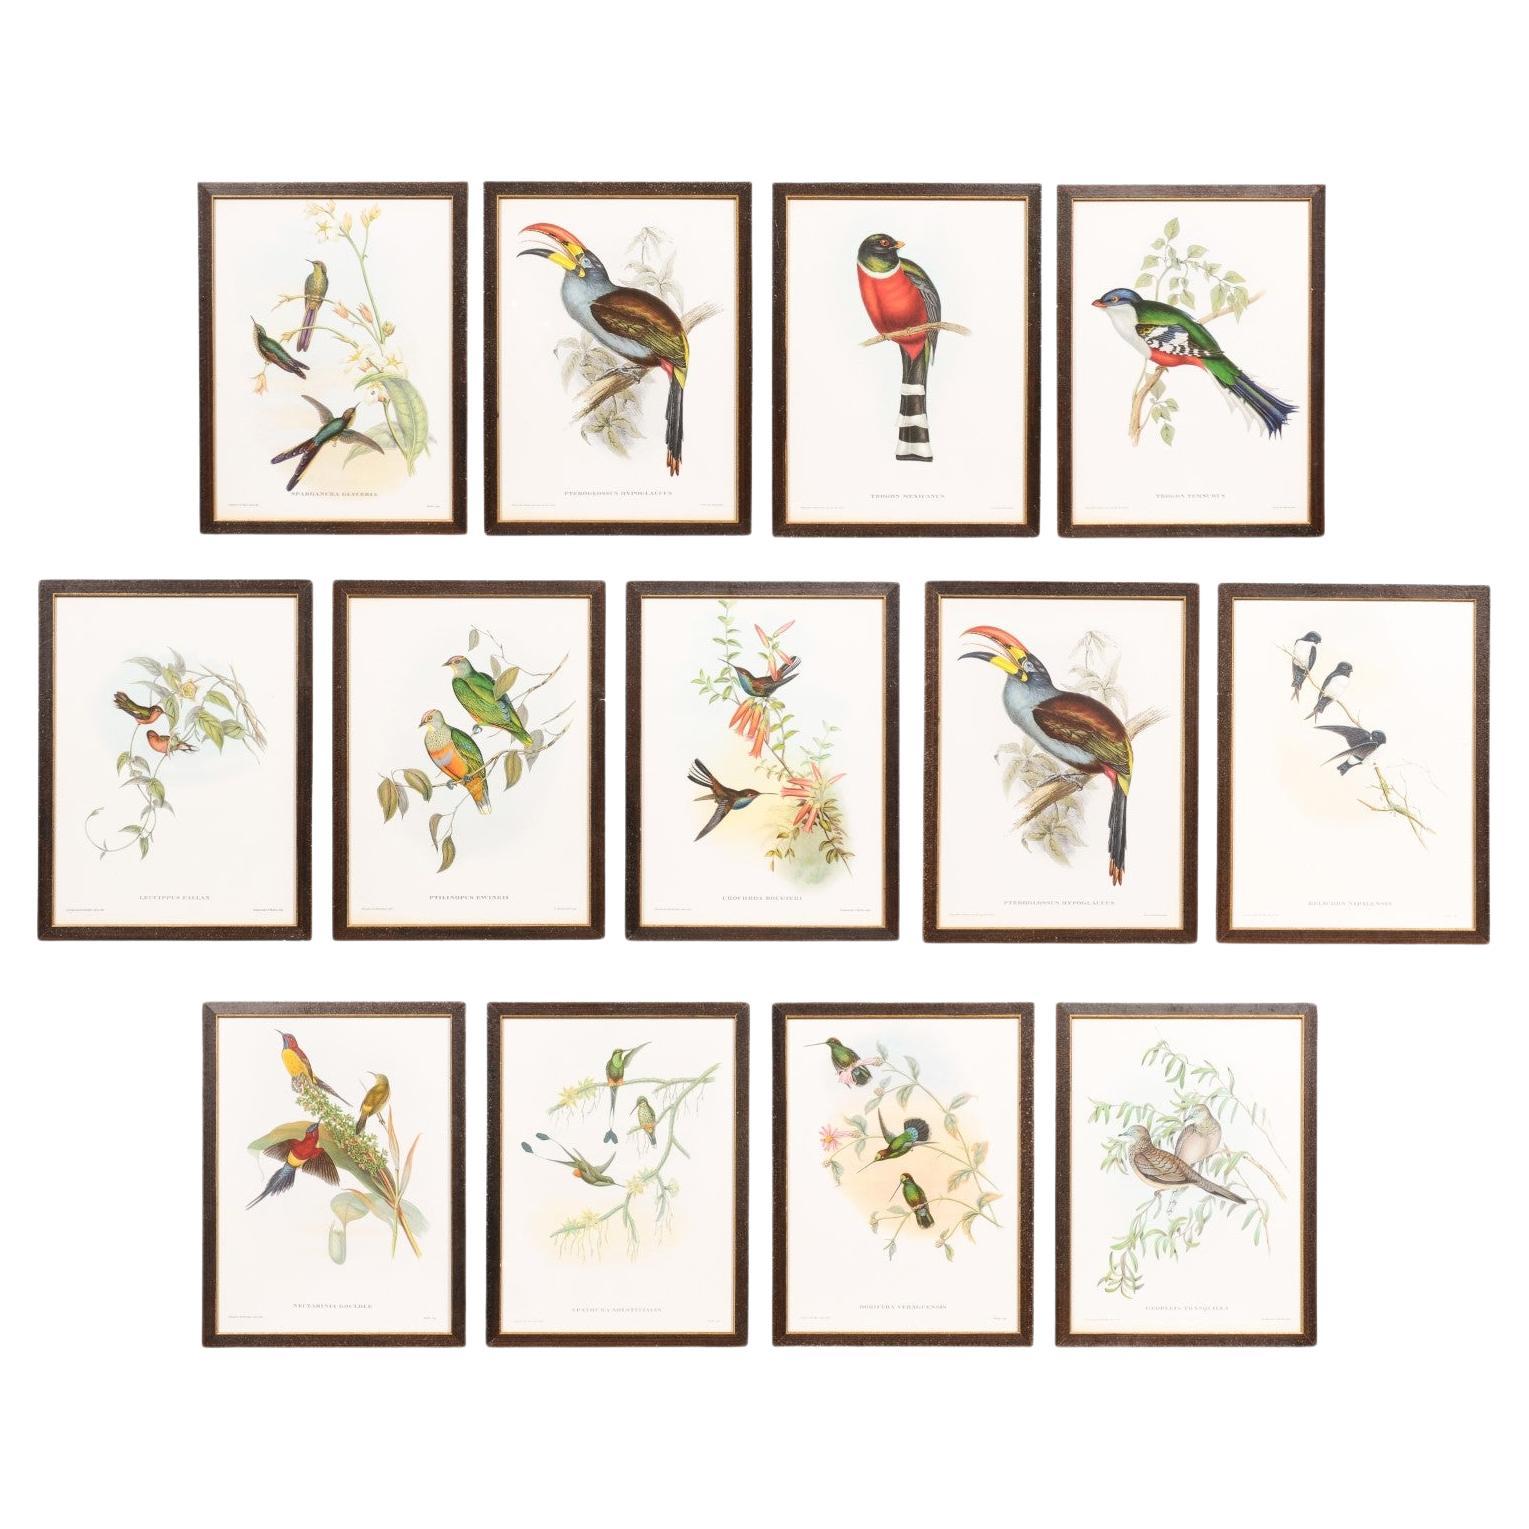 Impressions d'oiseaux tropicaux dans des cadres en bois personnalisés de John Gould, 13 vendues chacune en vente